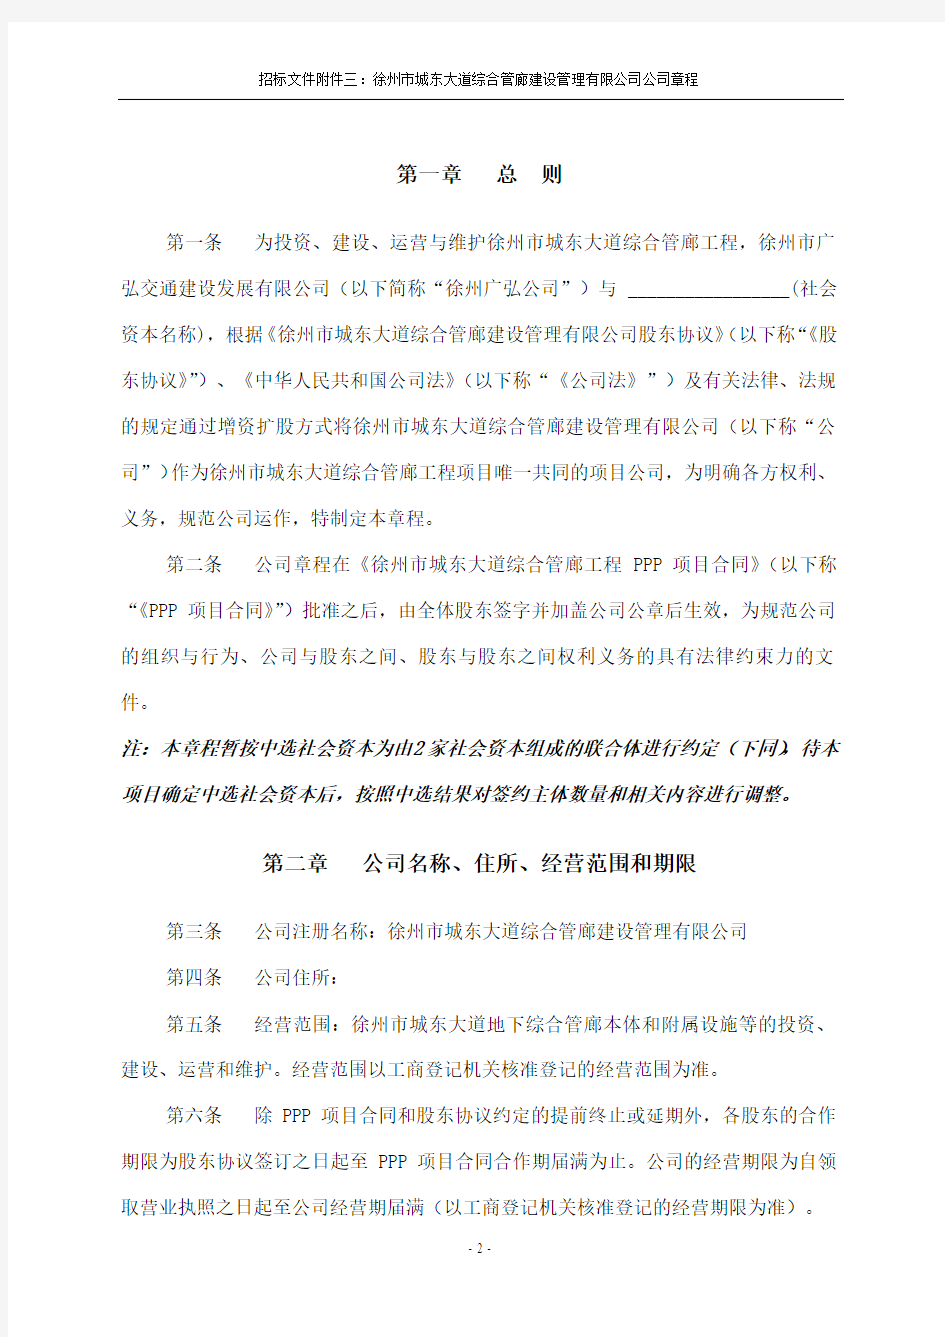 徐州市城东大道综合管廊工程PPP项目招标文件之附件三